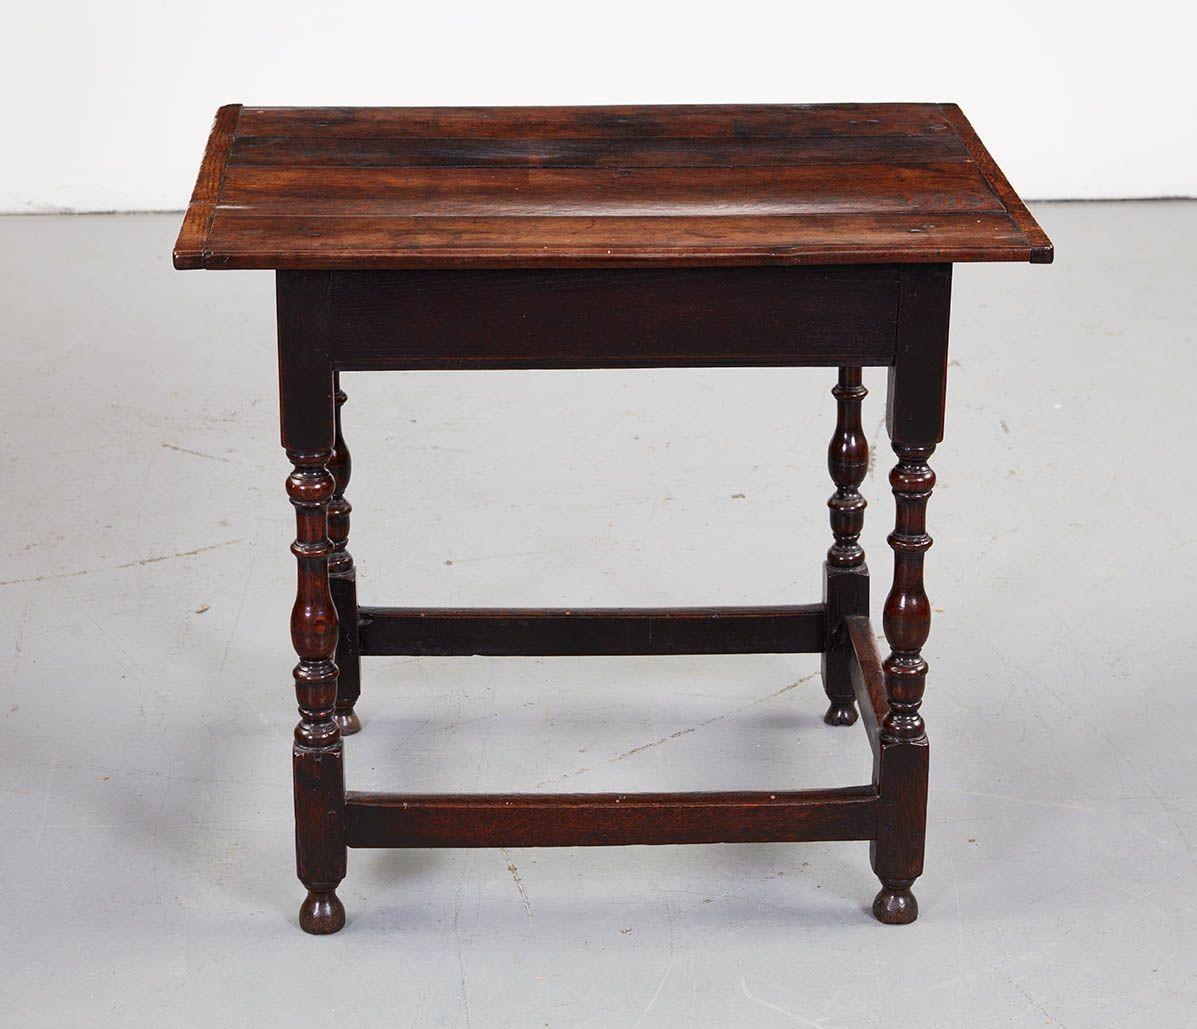 Rechteckiger Tisch aus englischer Eiche aus dem 18. Jahrhundert mit einer geplankten Platte mit Endstollen über balusterförmig gedrechselten Beinen, die durch eine untere Kastenstreckung verbunden sind. Gute Farbe.